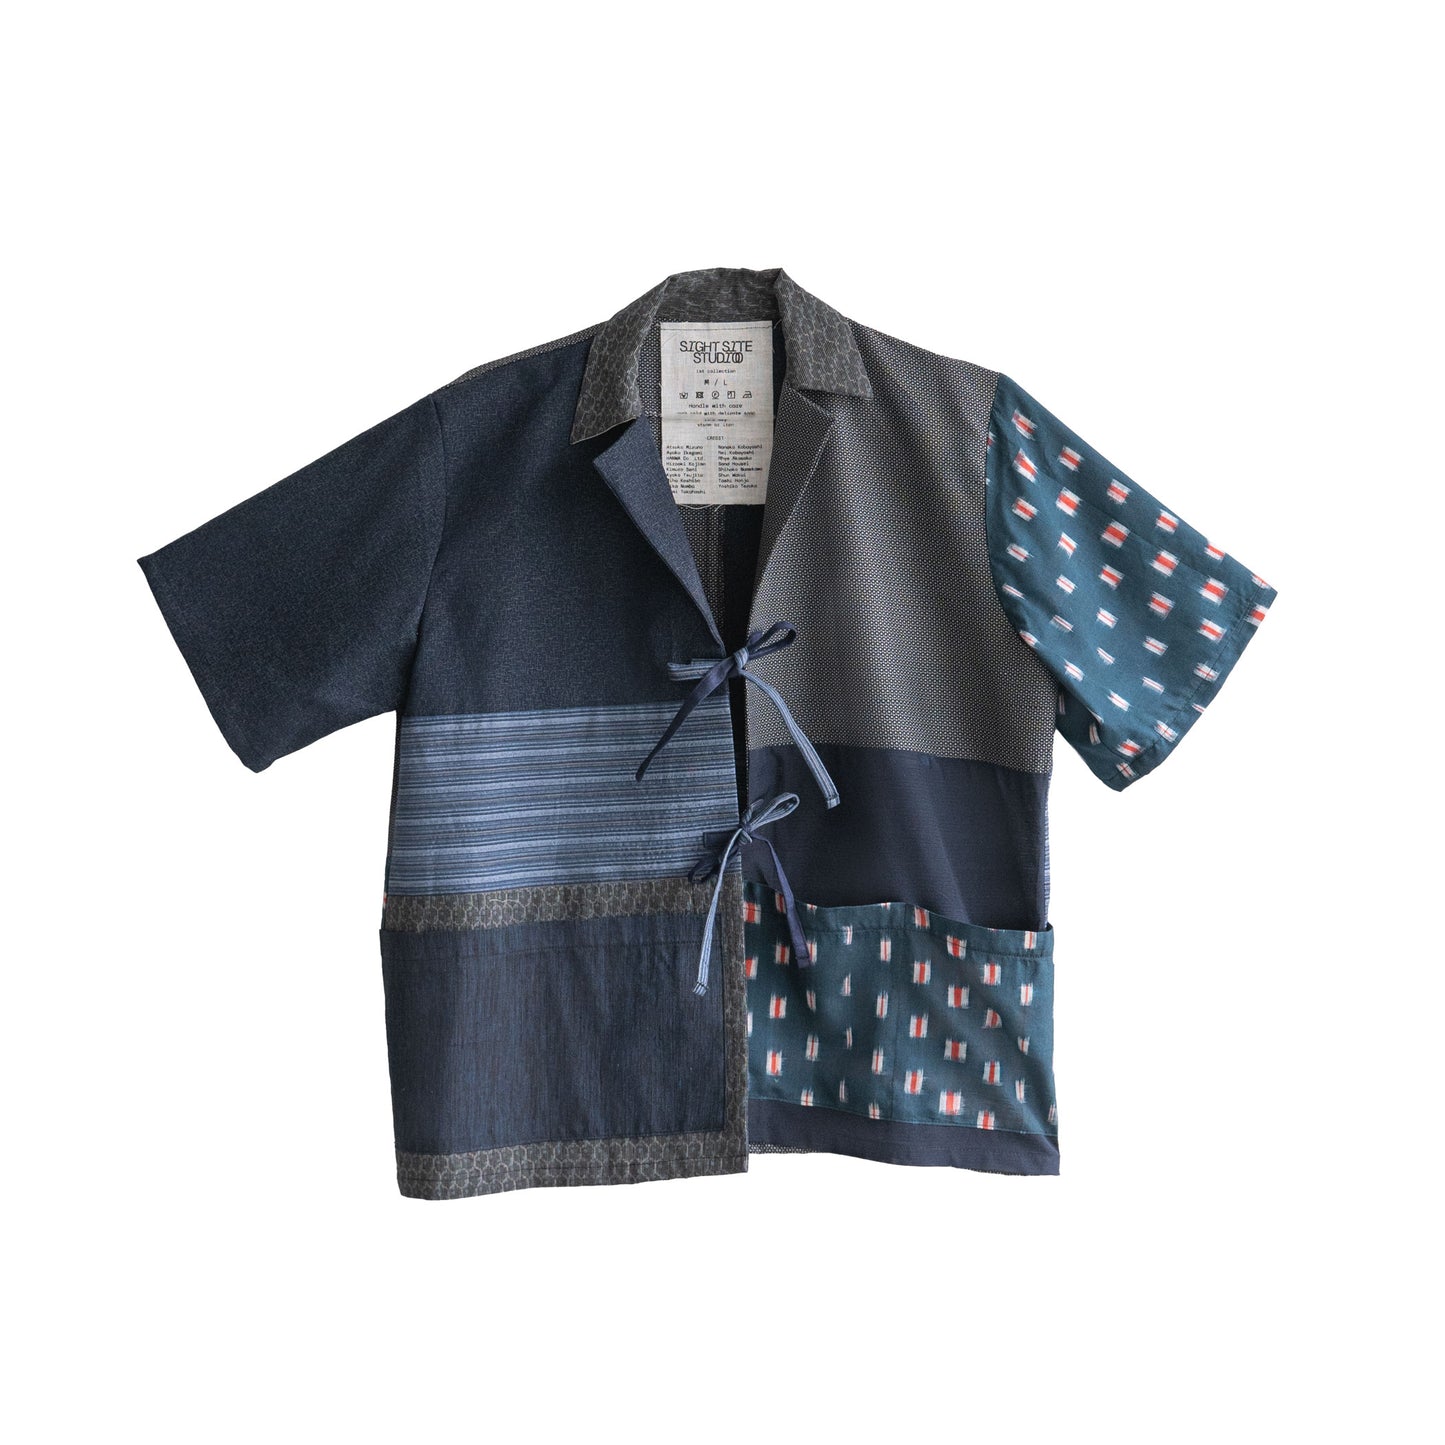 Kimono Working Shirts - Blue 01 M